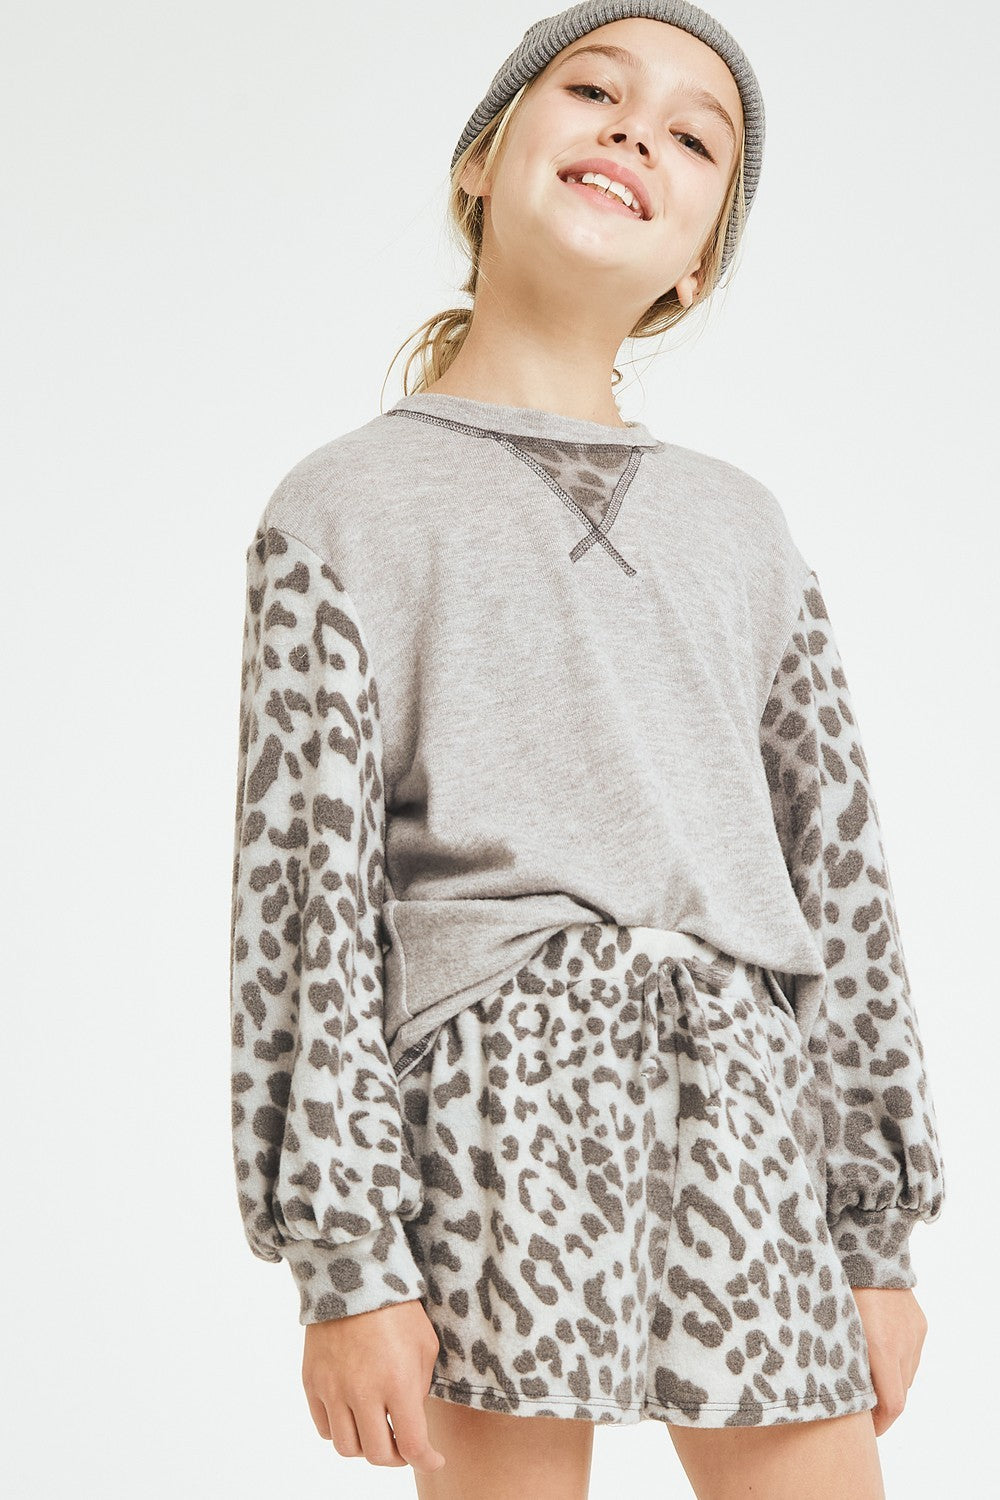 gray leopard knit sweater